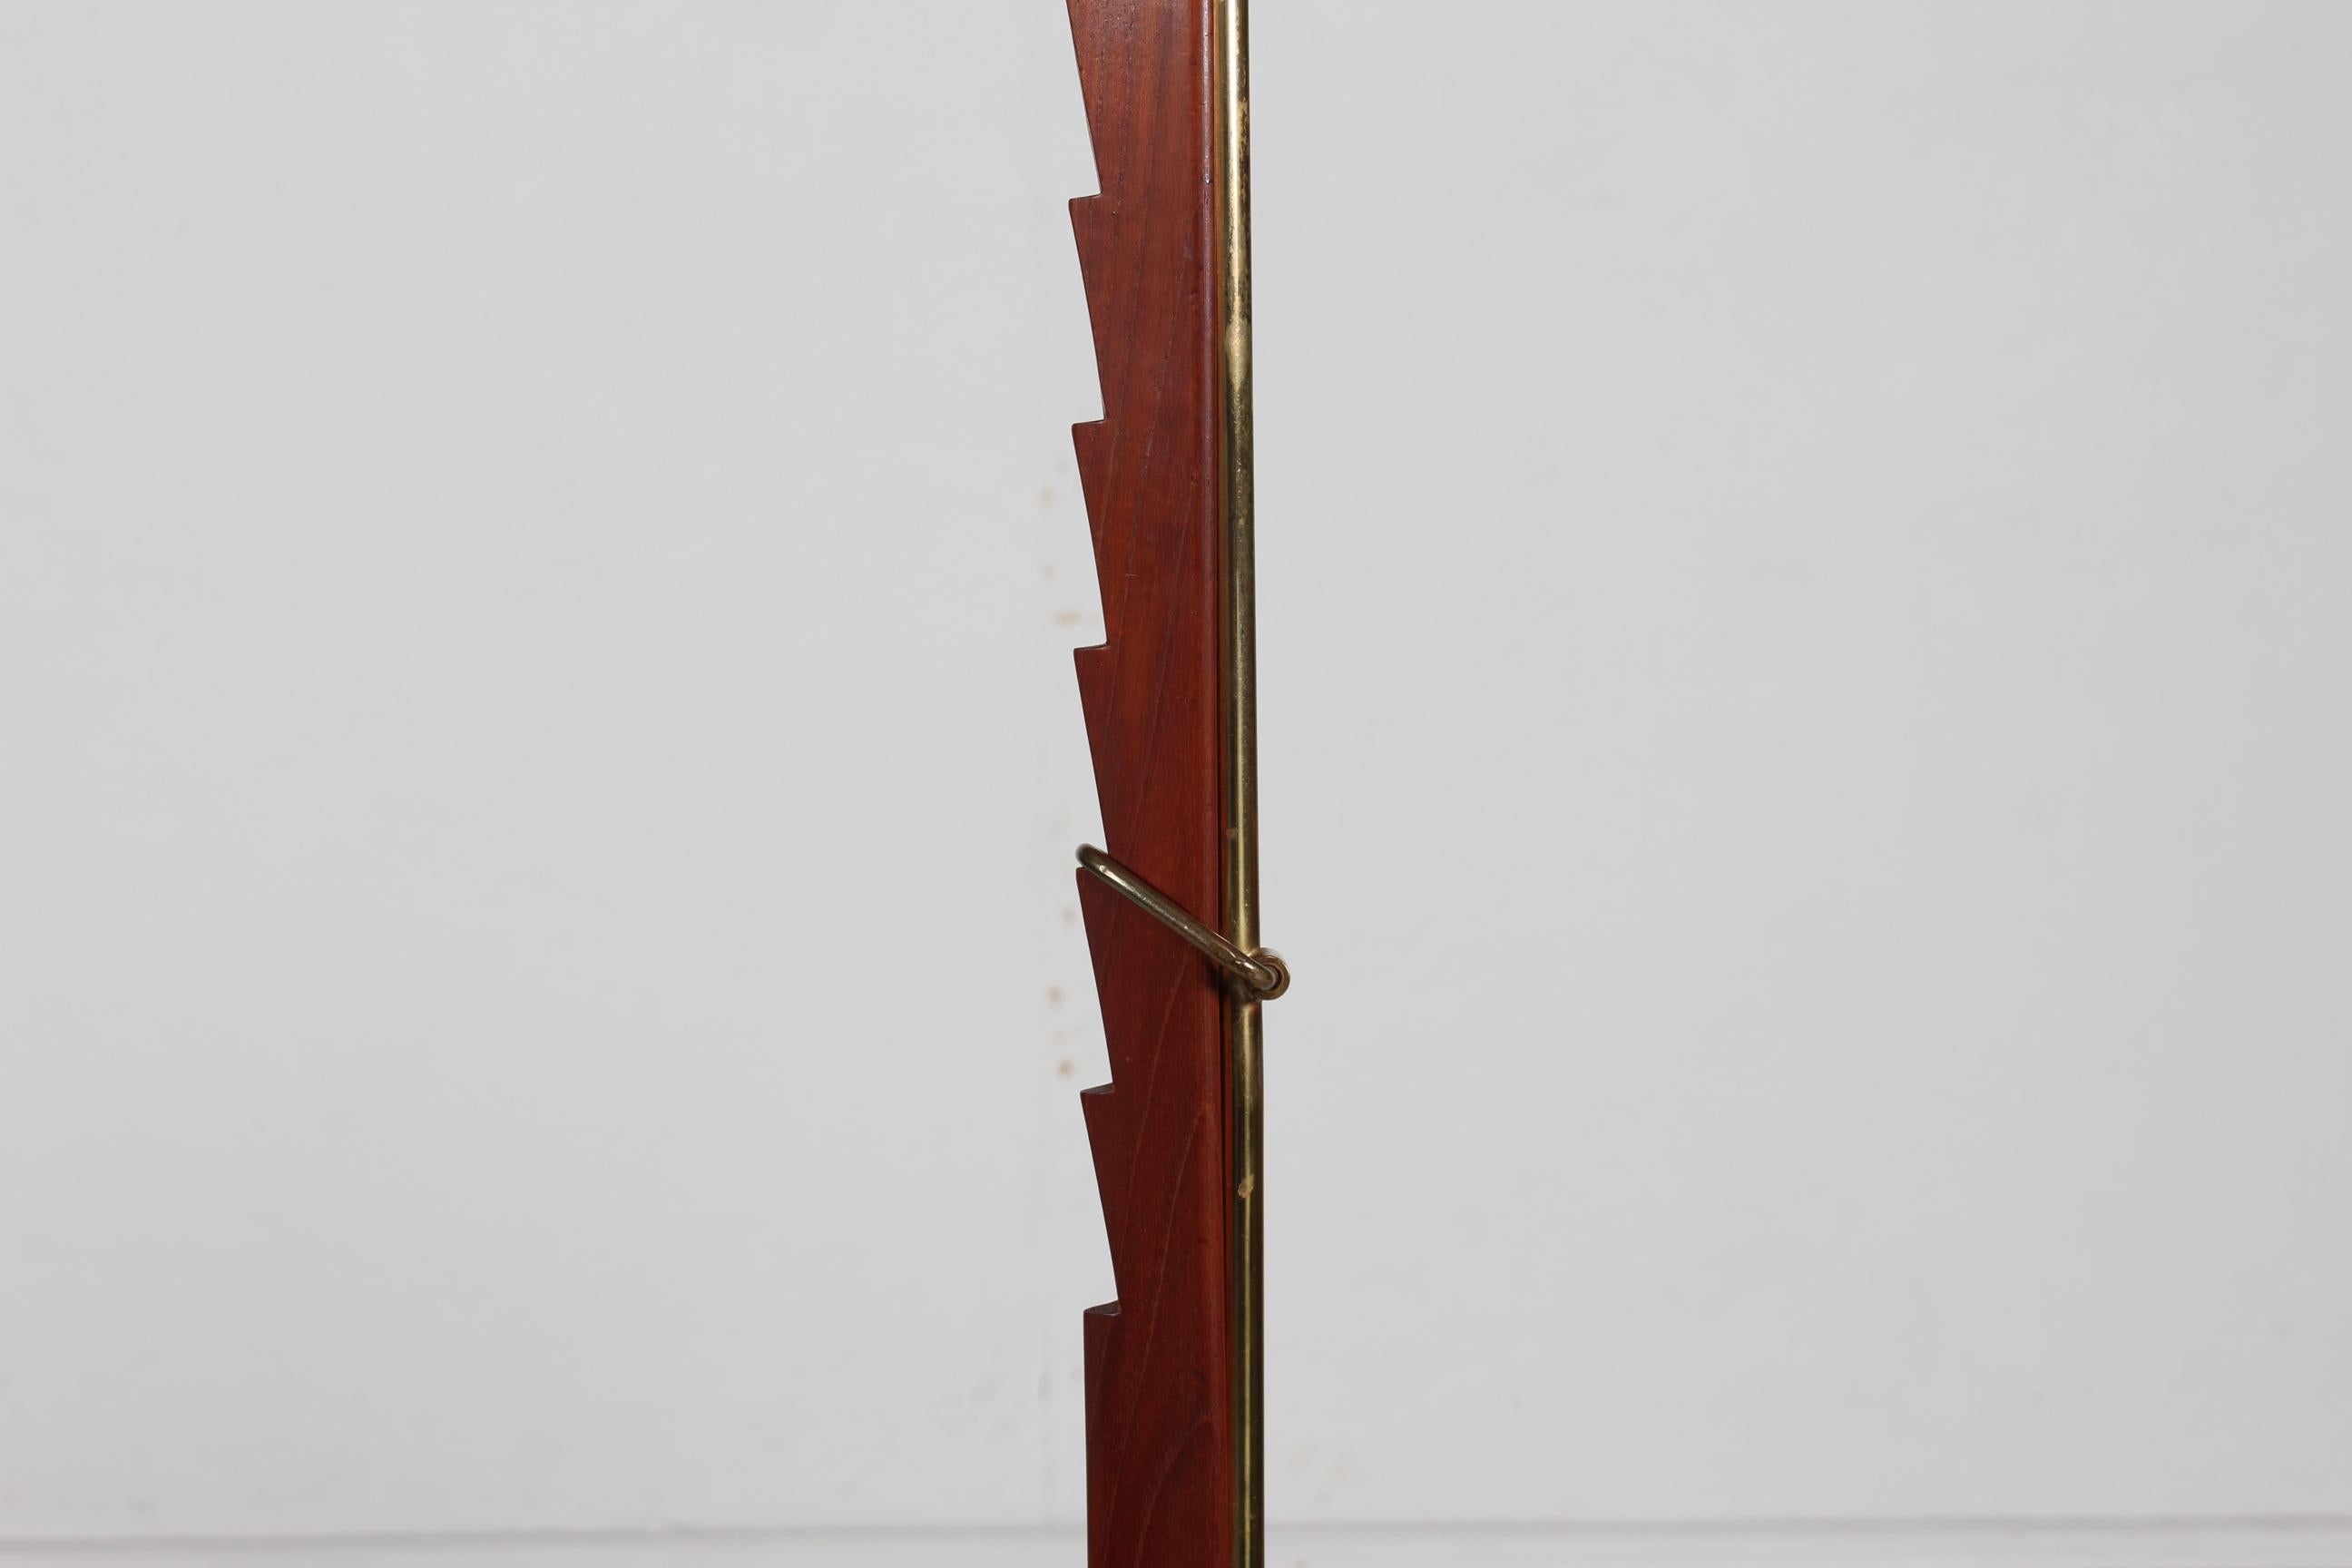 Lampadaire réglable en hauteur du designer danois Svend Aage Holm Sørensen (1913-2004) fabriqué dans son propre atelier Holm Sørensen & Co.

La base de la lampe est en fonte, la tige est en teck et en laiton.
 L'abat-jour est un abat-jour original